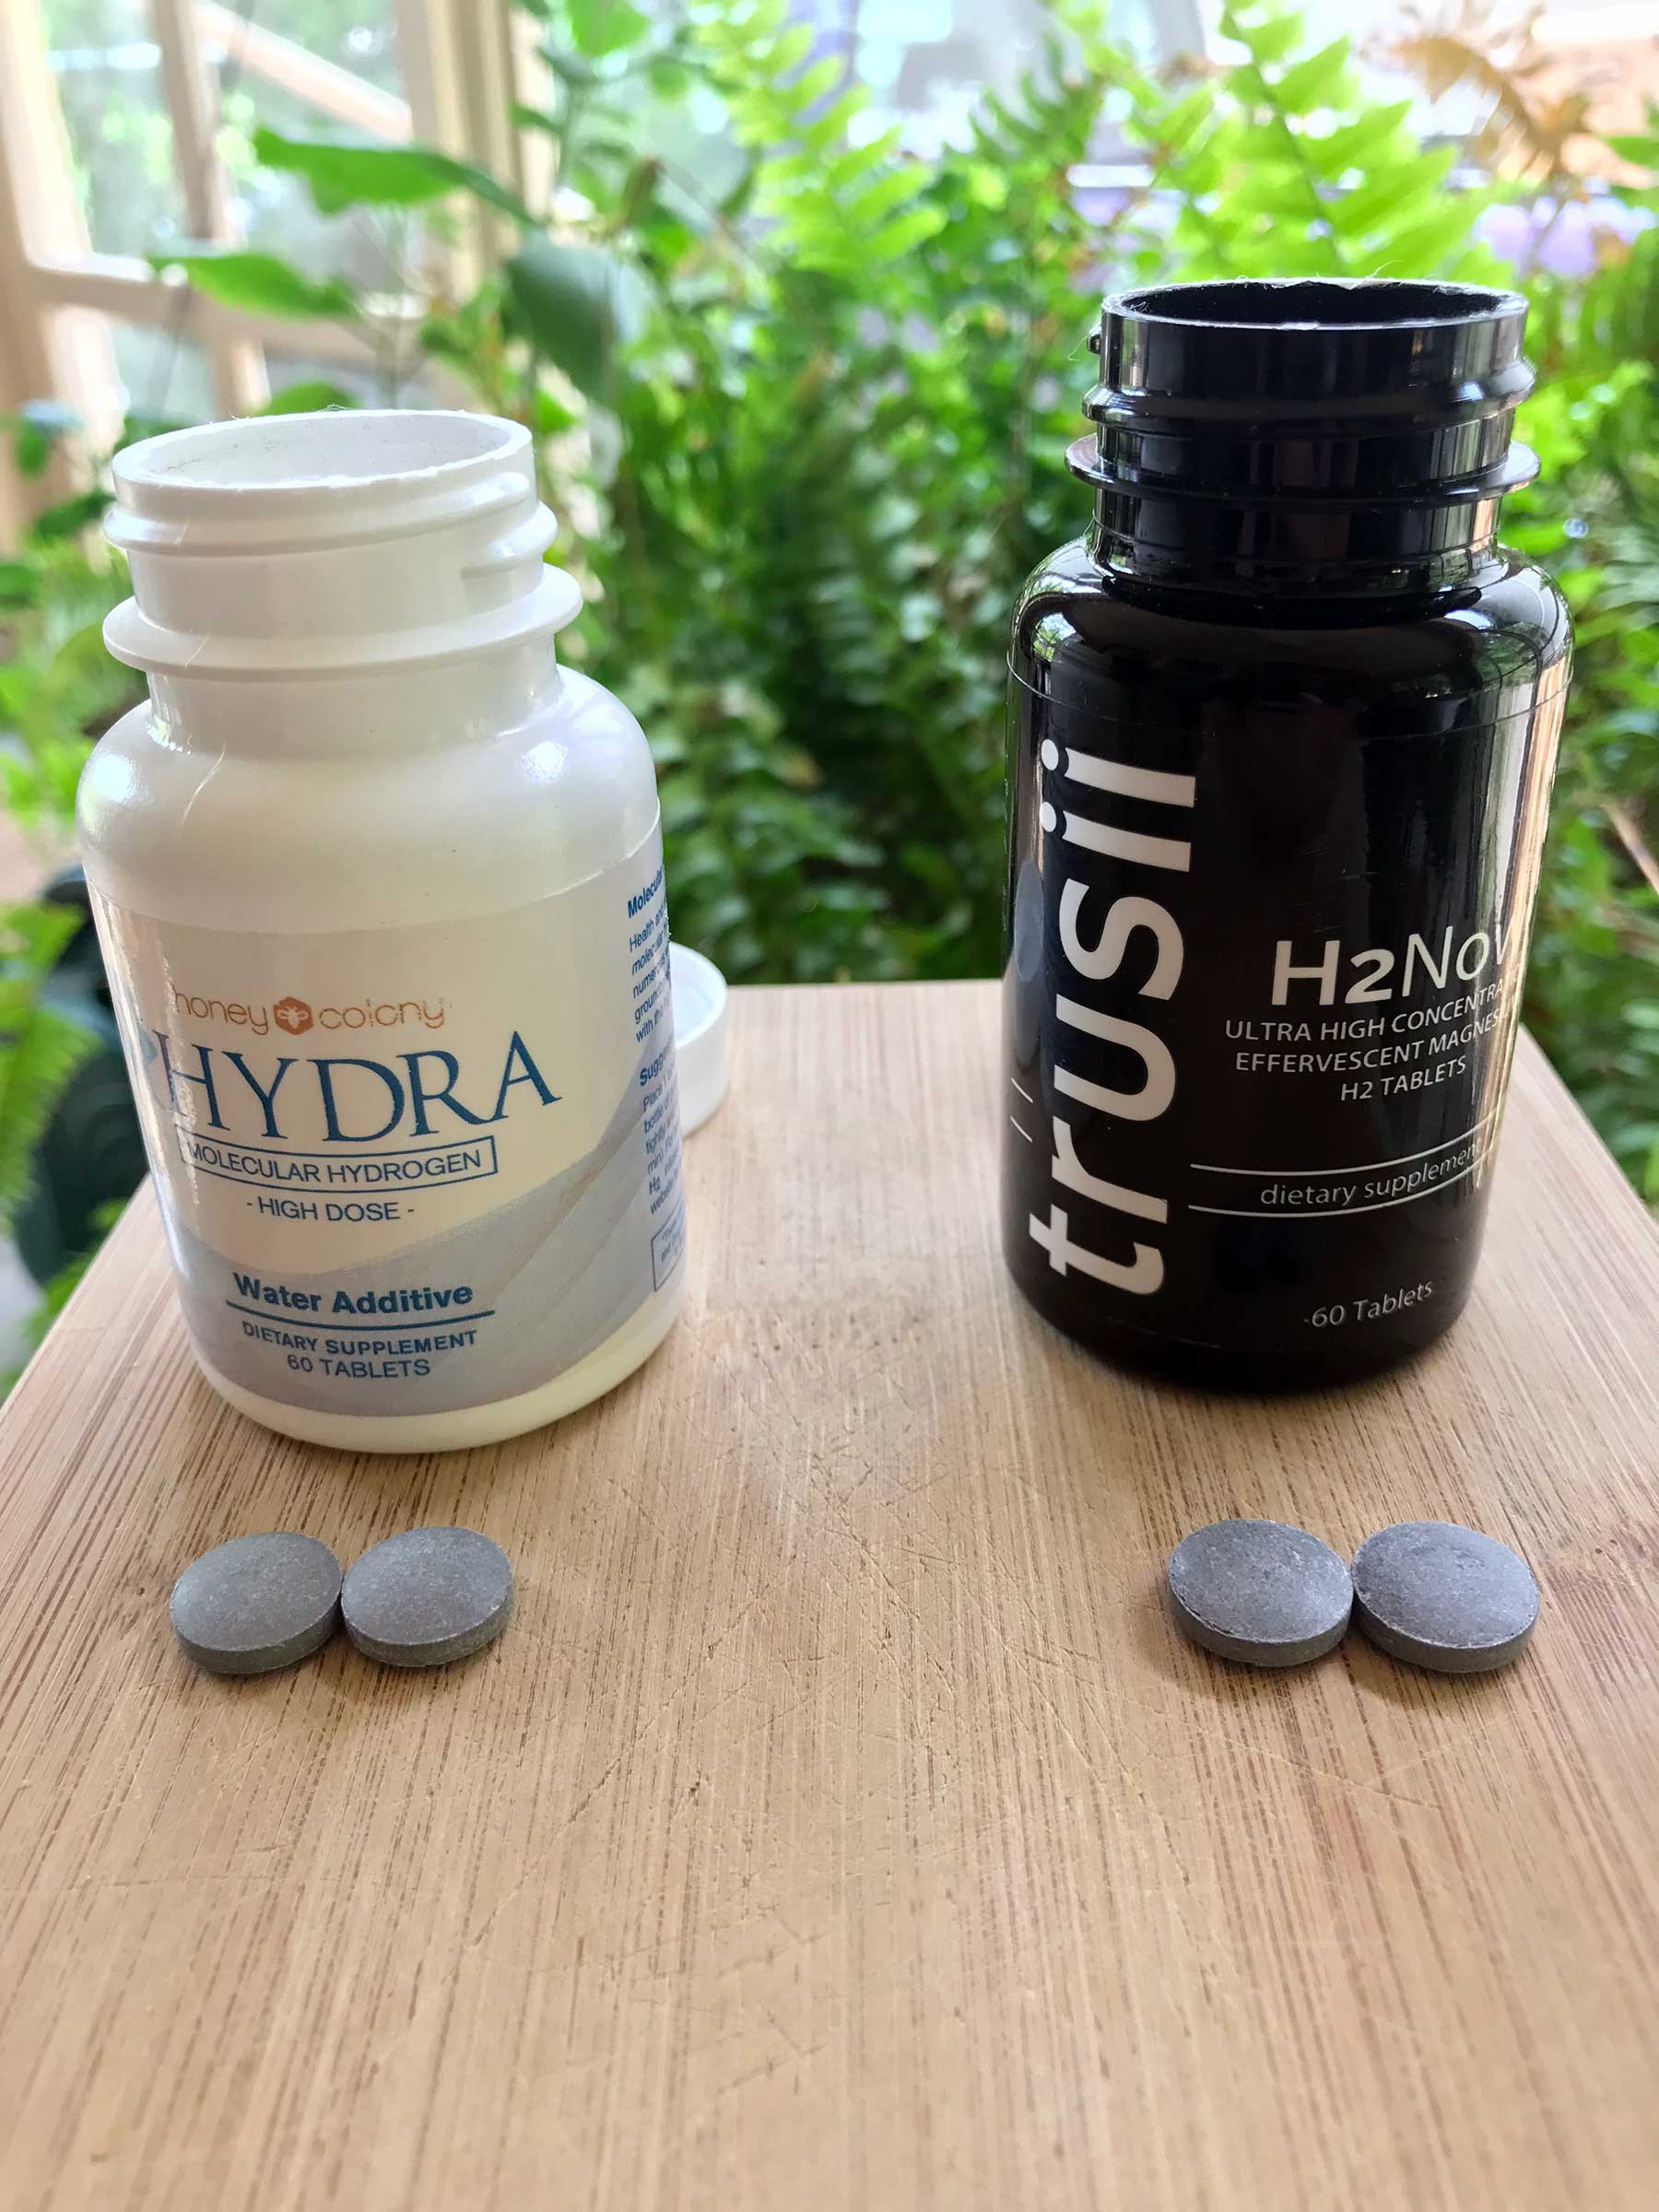 Hydra and Trusii molecular hydrogen tablets